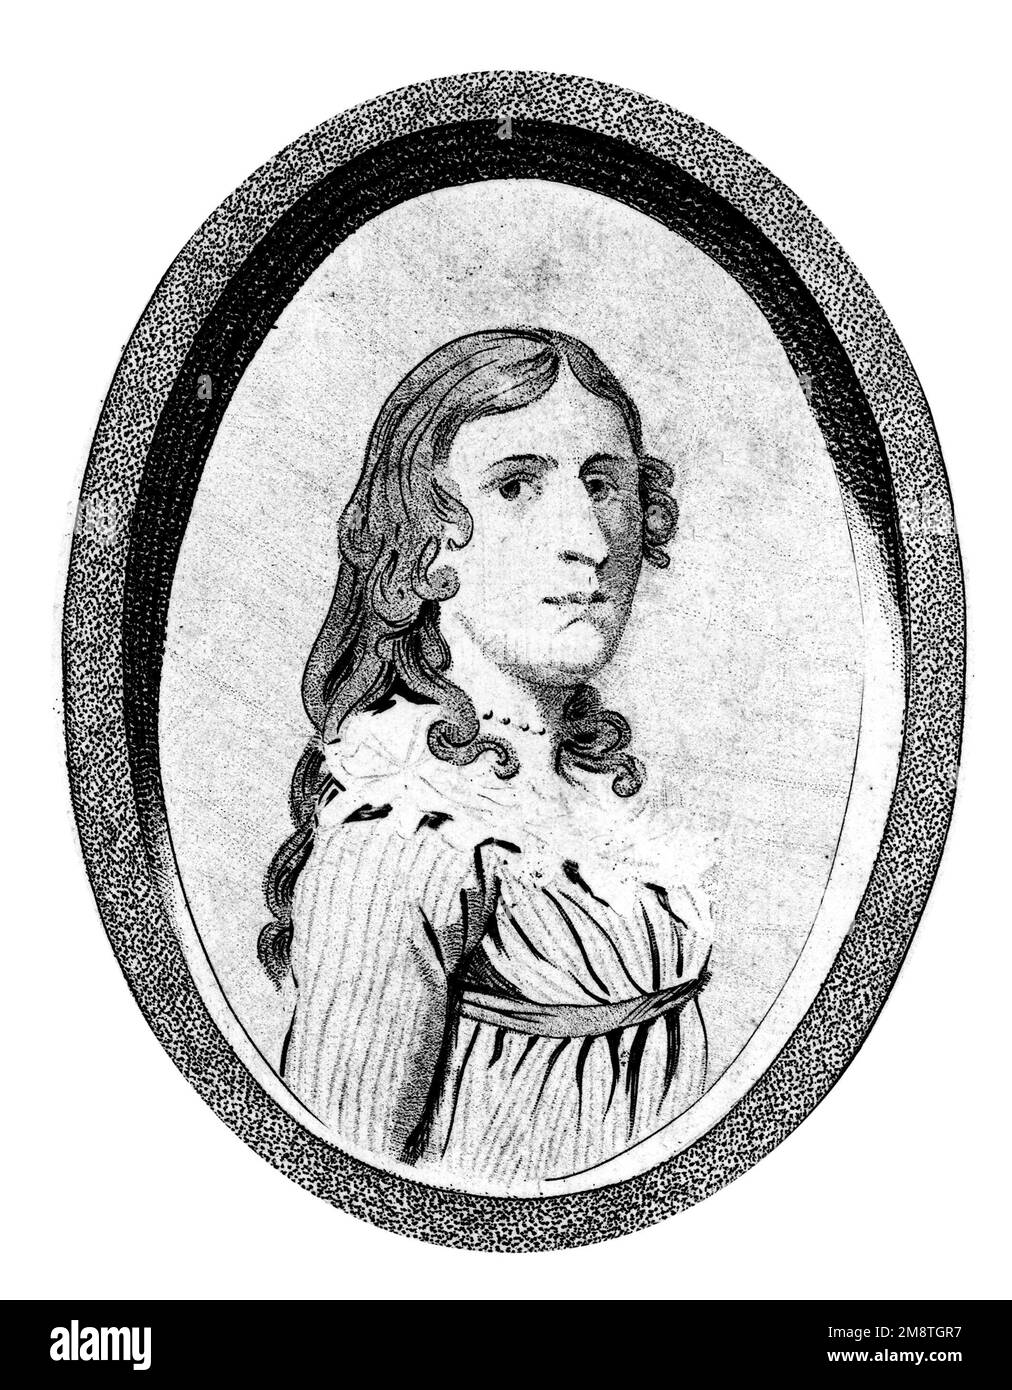 Porträt von der Fassade eines Buches über das Leben von Deborah Sampson. Deborah Sampson Gannett (1760-1827) war eine Frau, die sich als Mann, Robert Shirtliff, verkleidete, um sich der Kontinentalarmee anzuschließen. Stockfoto